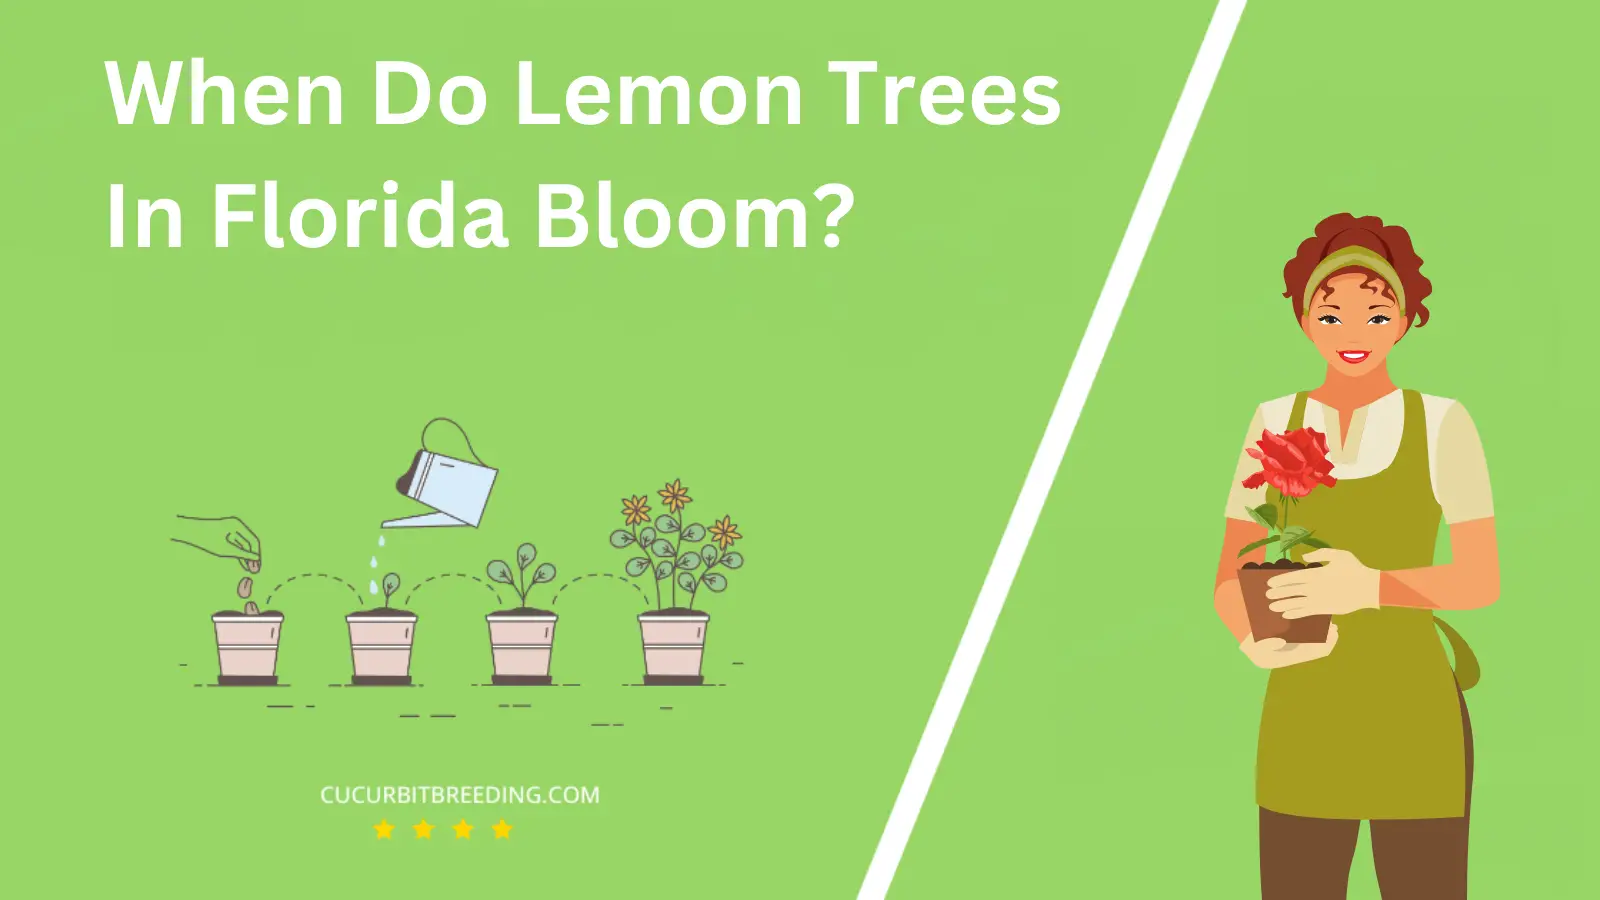 When Do Lemon Trees In Florida Bloom?